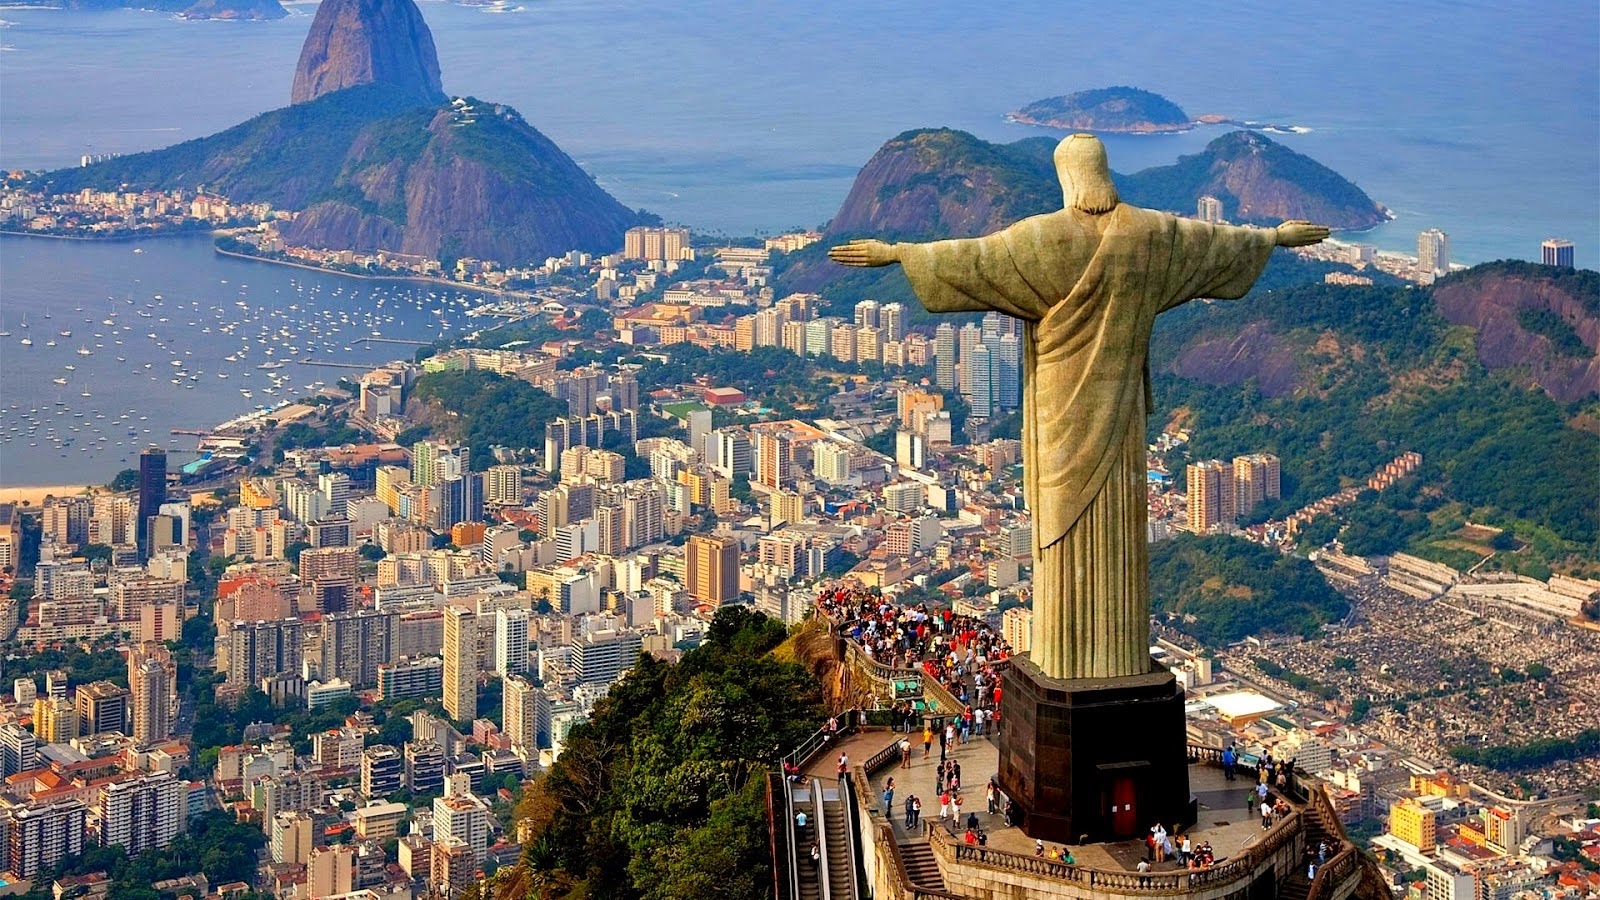 christ-the-redeemer-statue-rio-de-janeiro-brazil.jpg